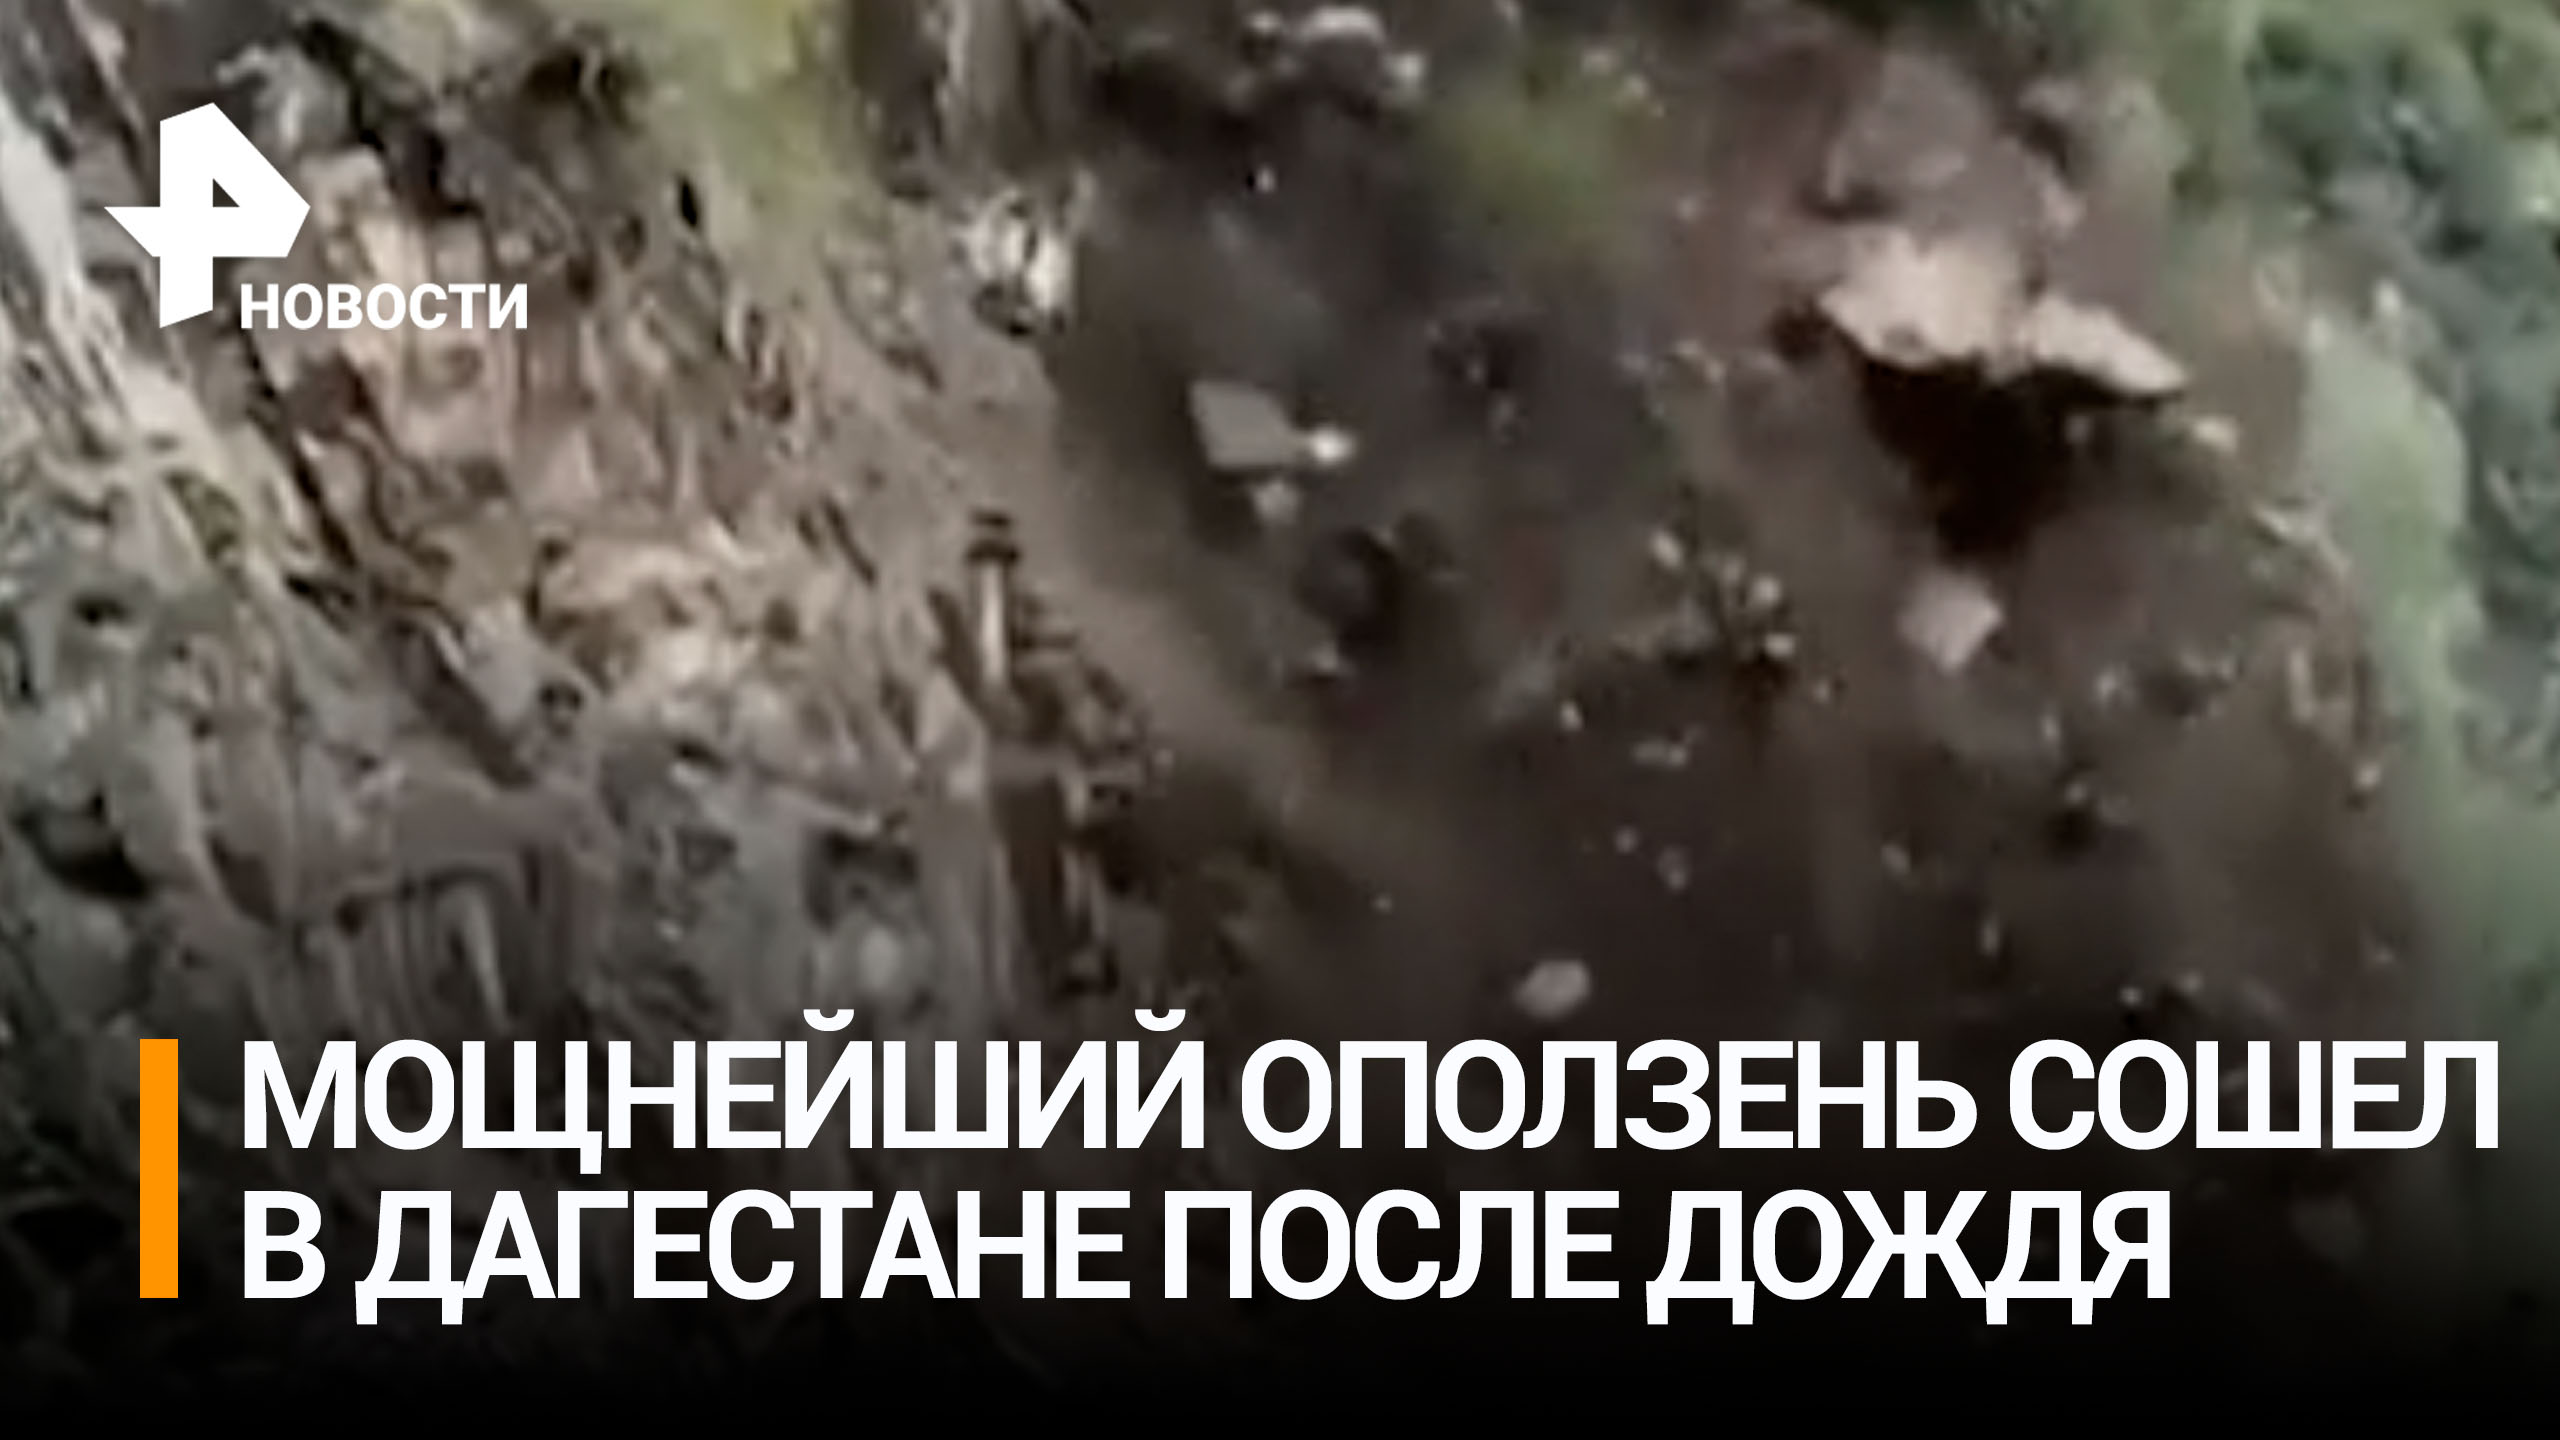 Скалу будто натерли на терке: страшный оползень сошел на горную дорогу в Дагестане / РЕН Новости